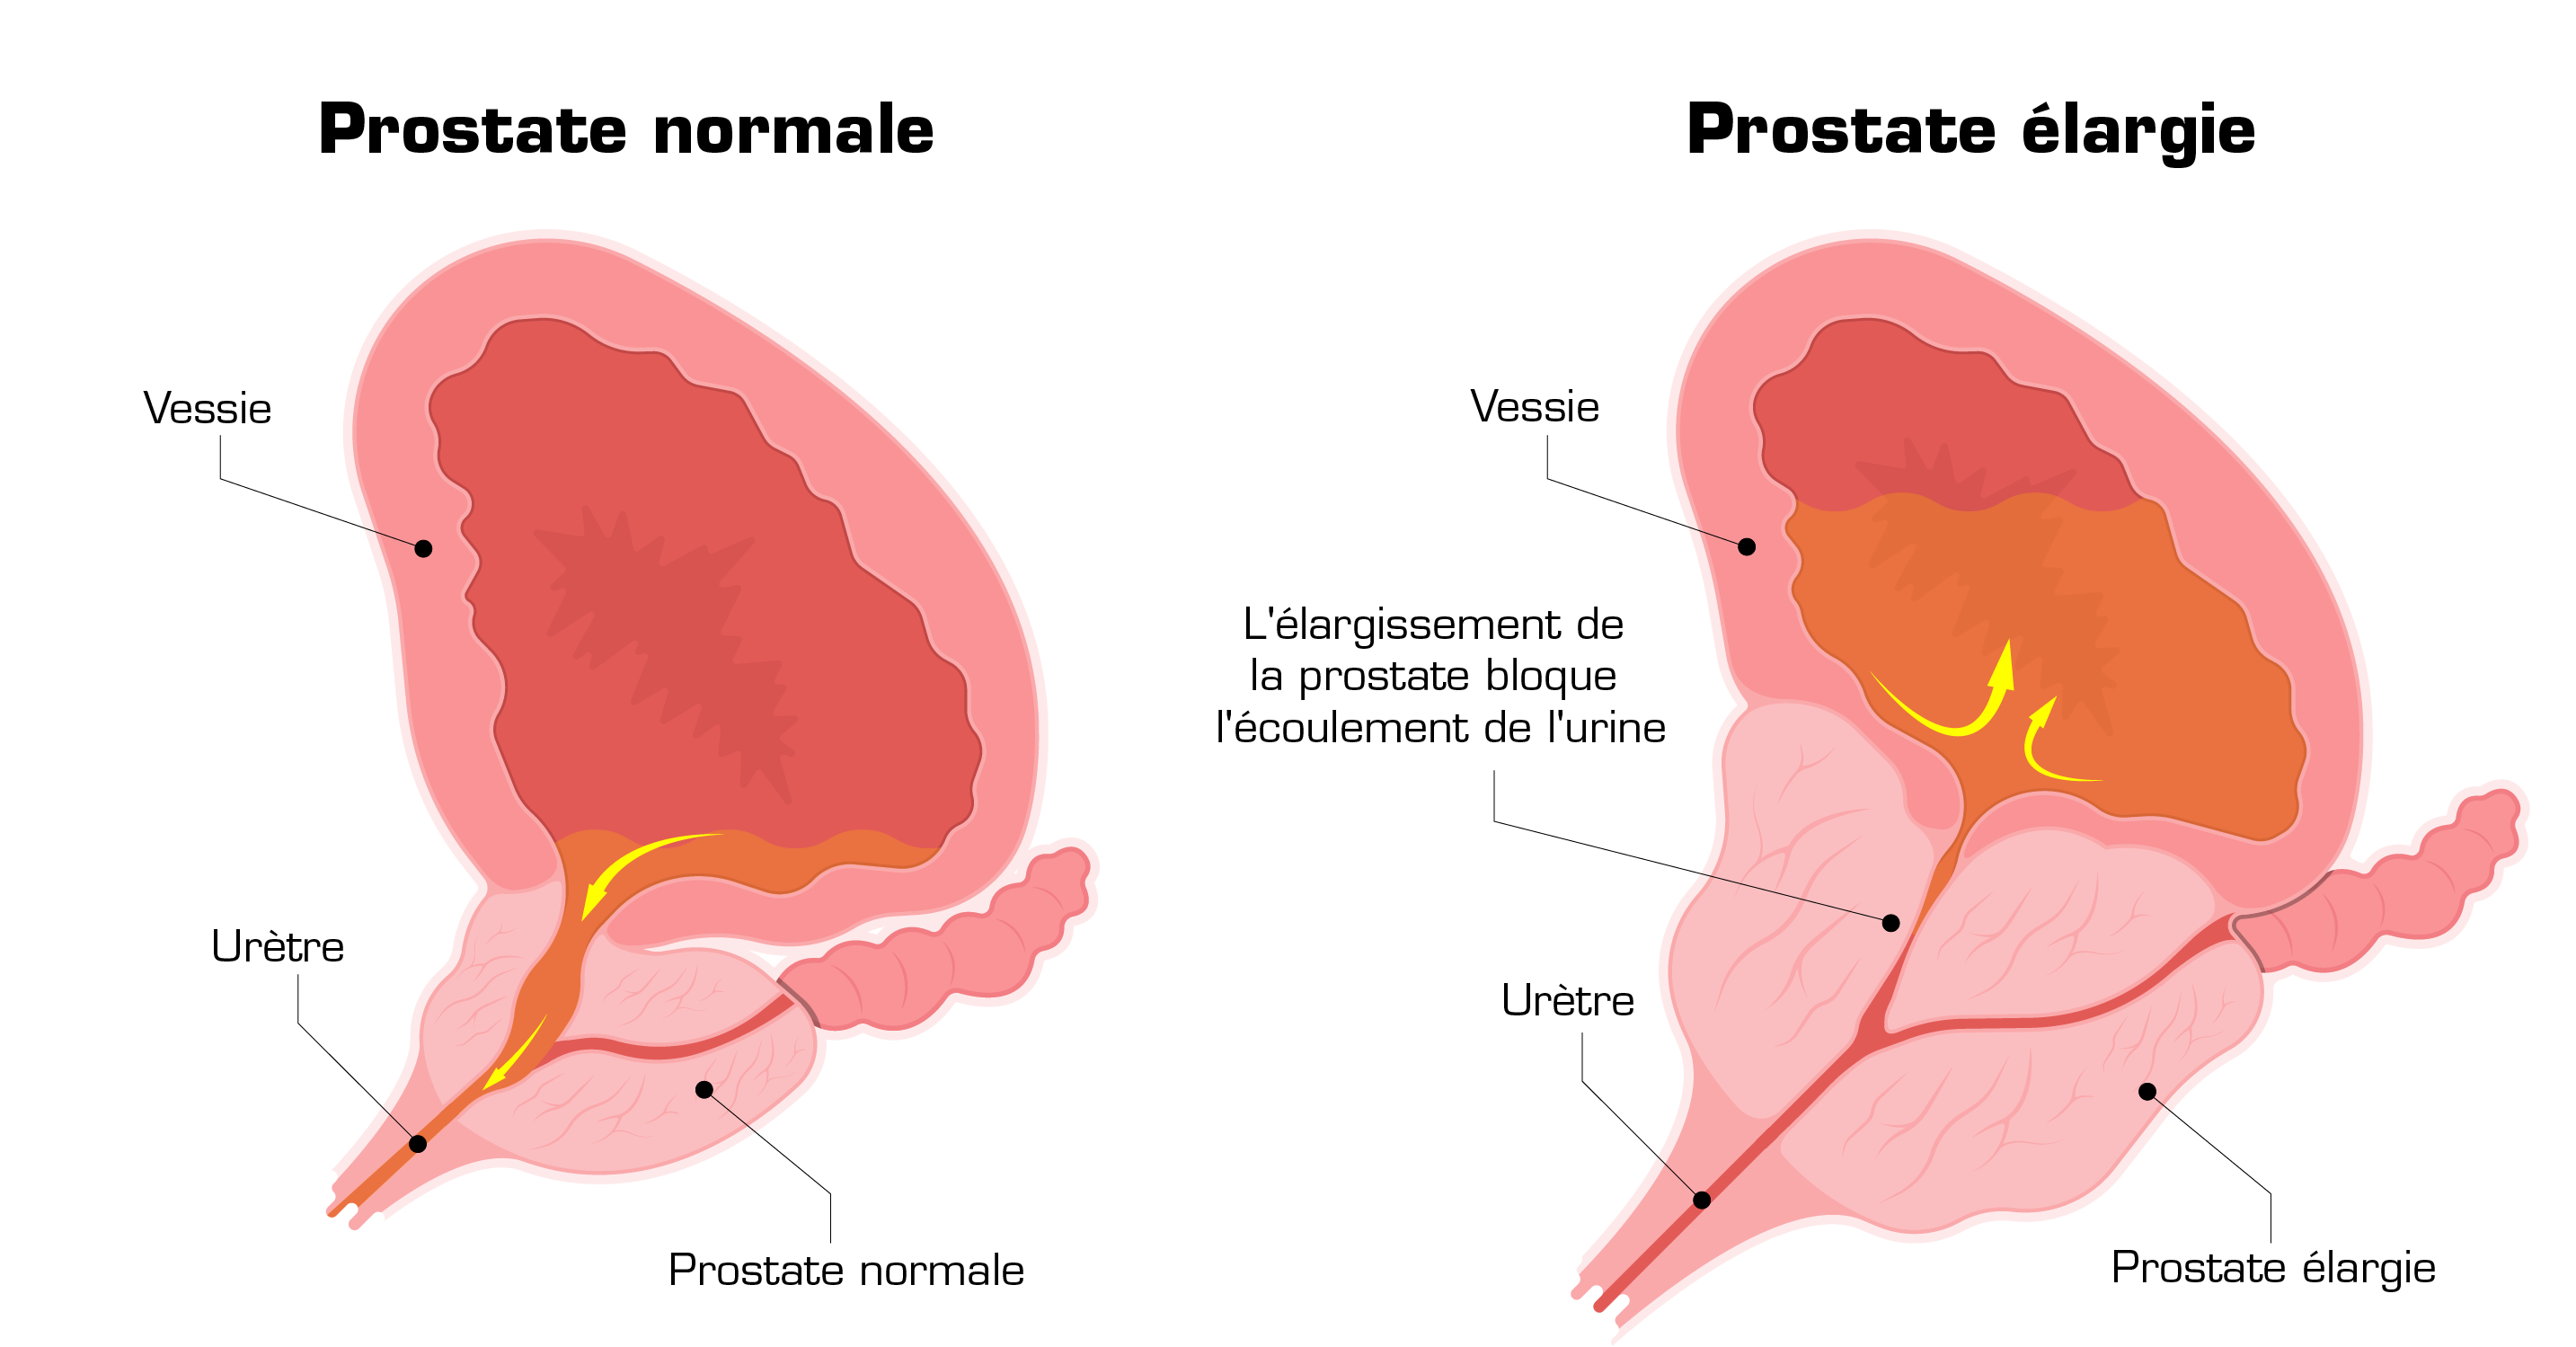 normal vs enlarged prostate